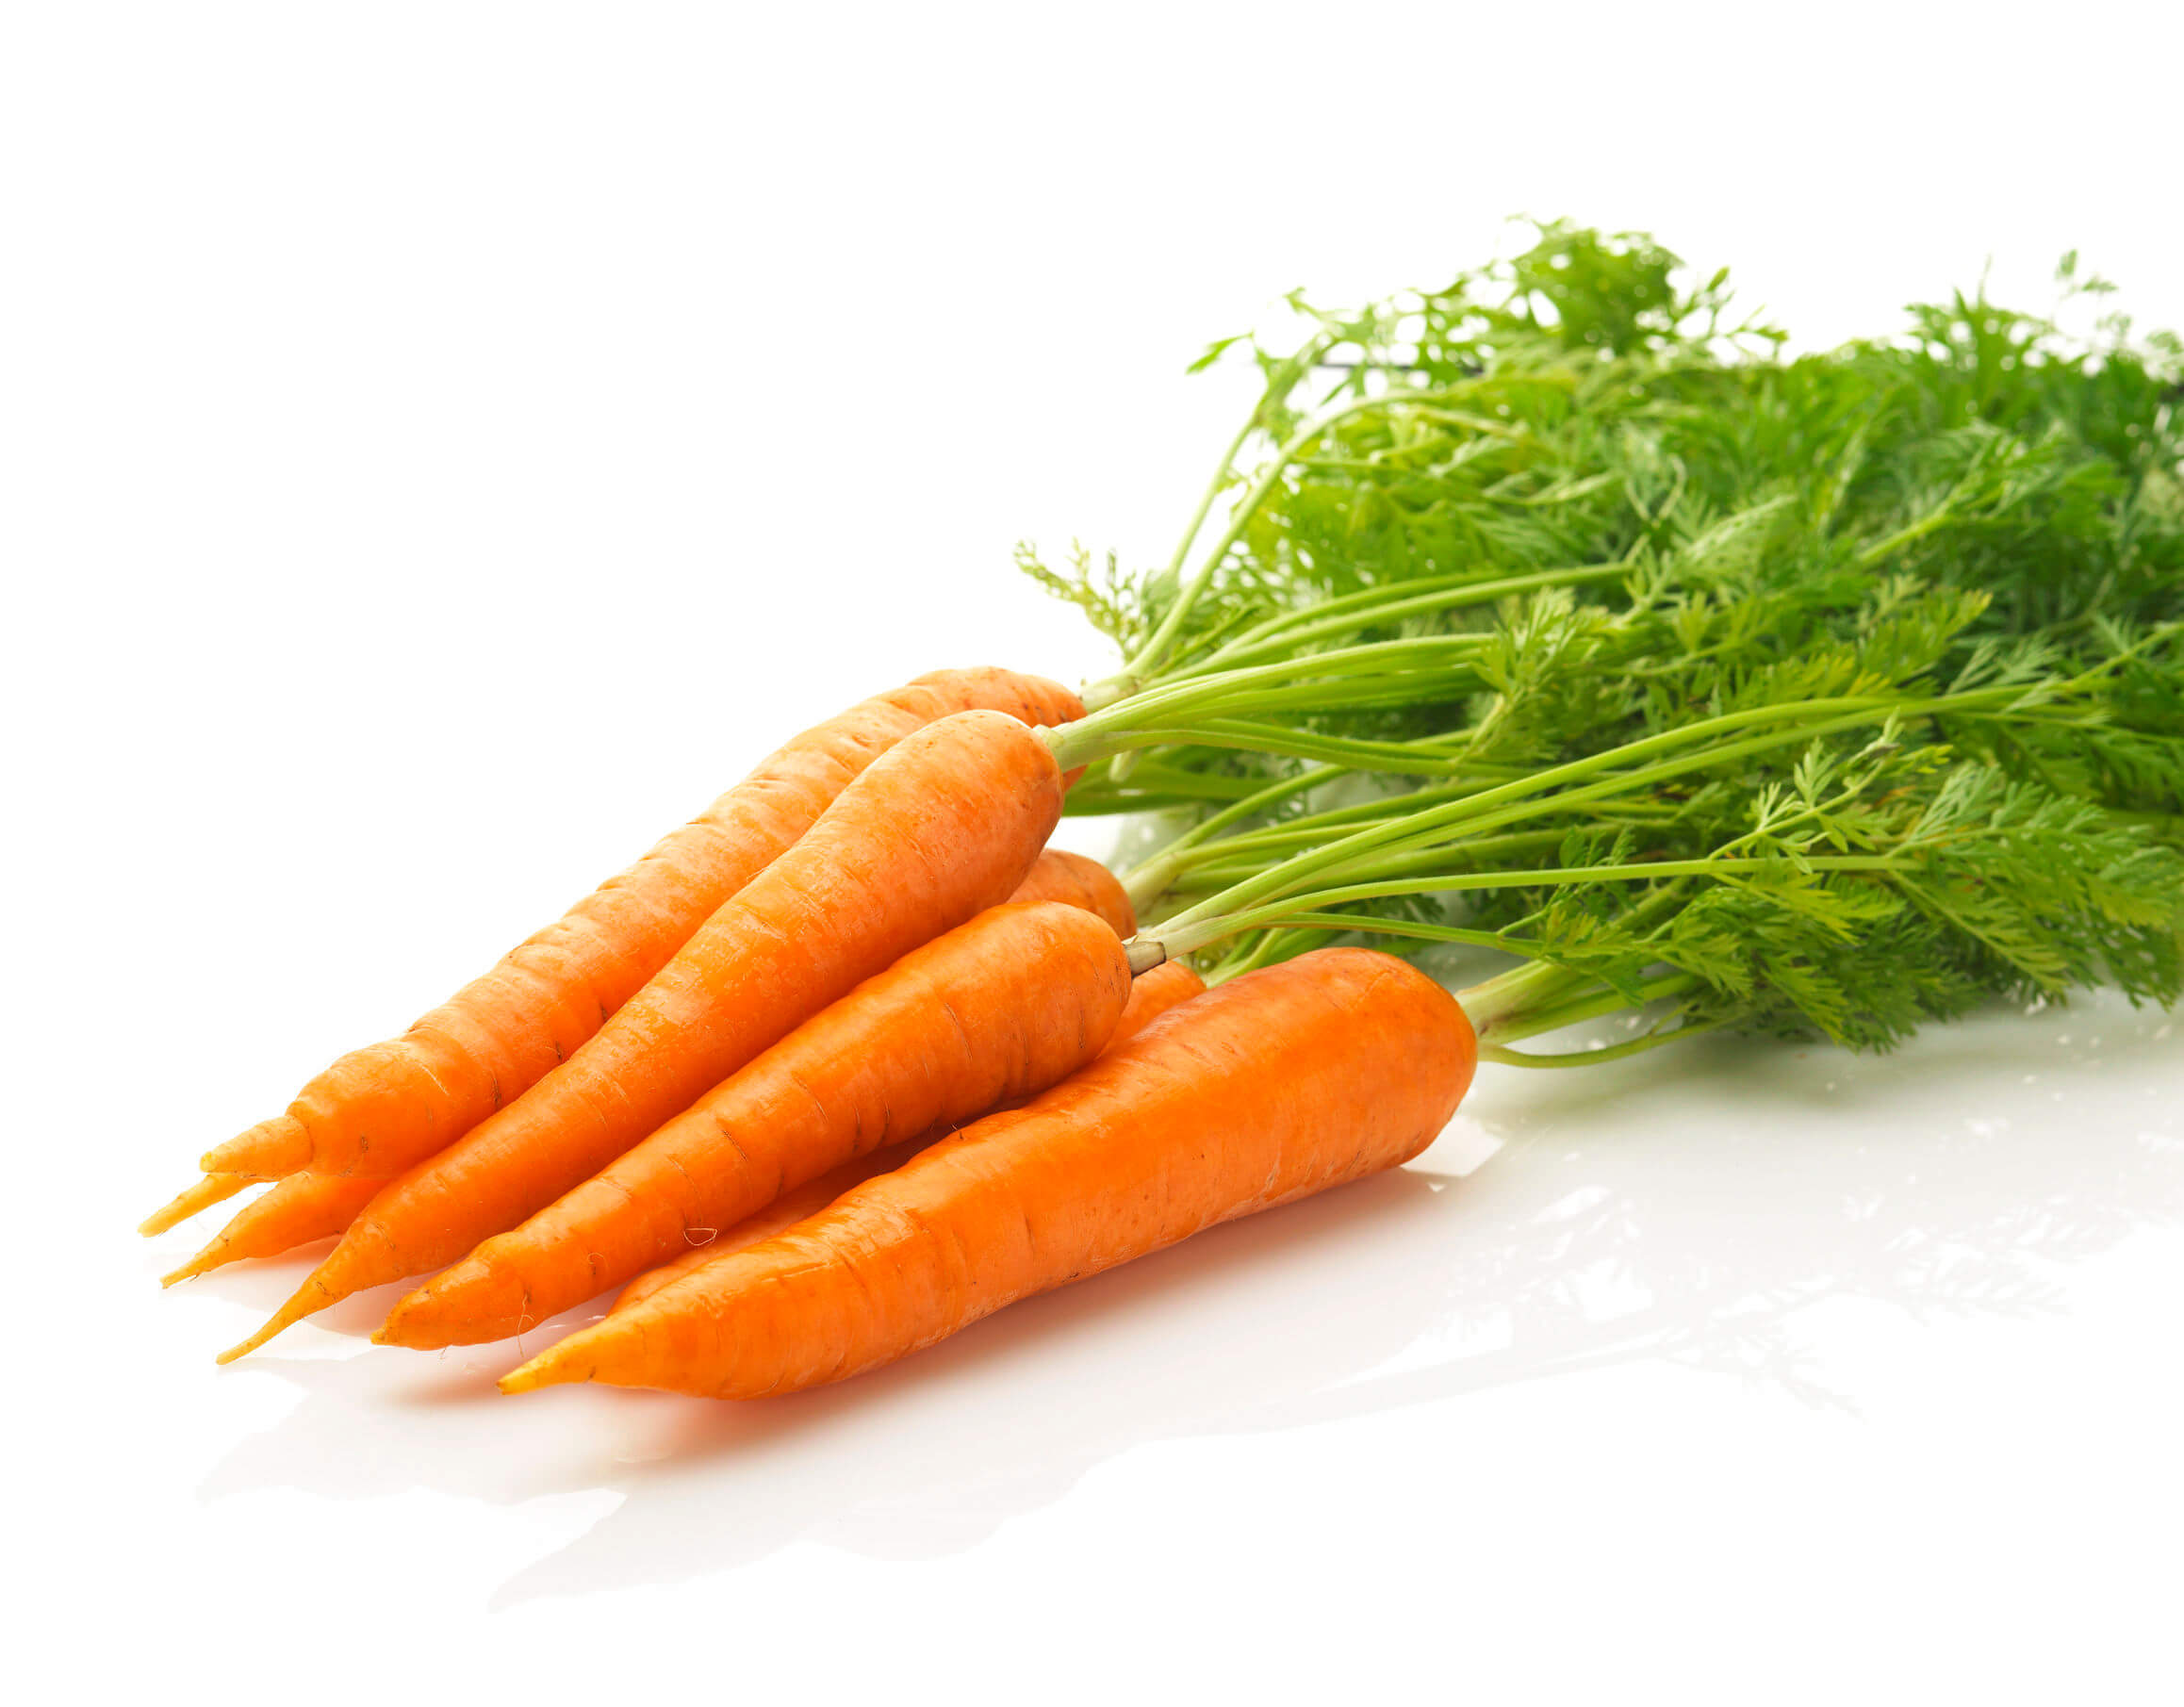 Le carote sono un'ottima fonte di beta caroteni